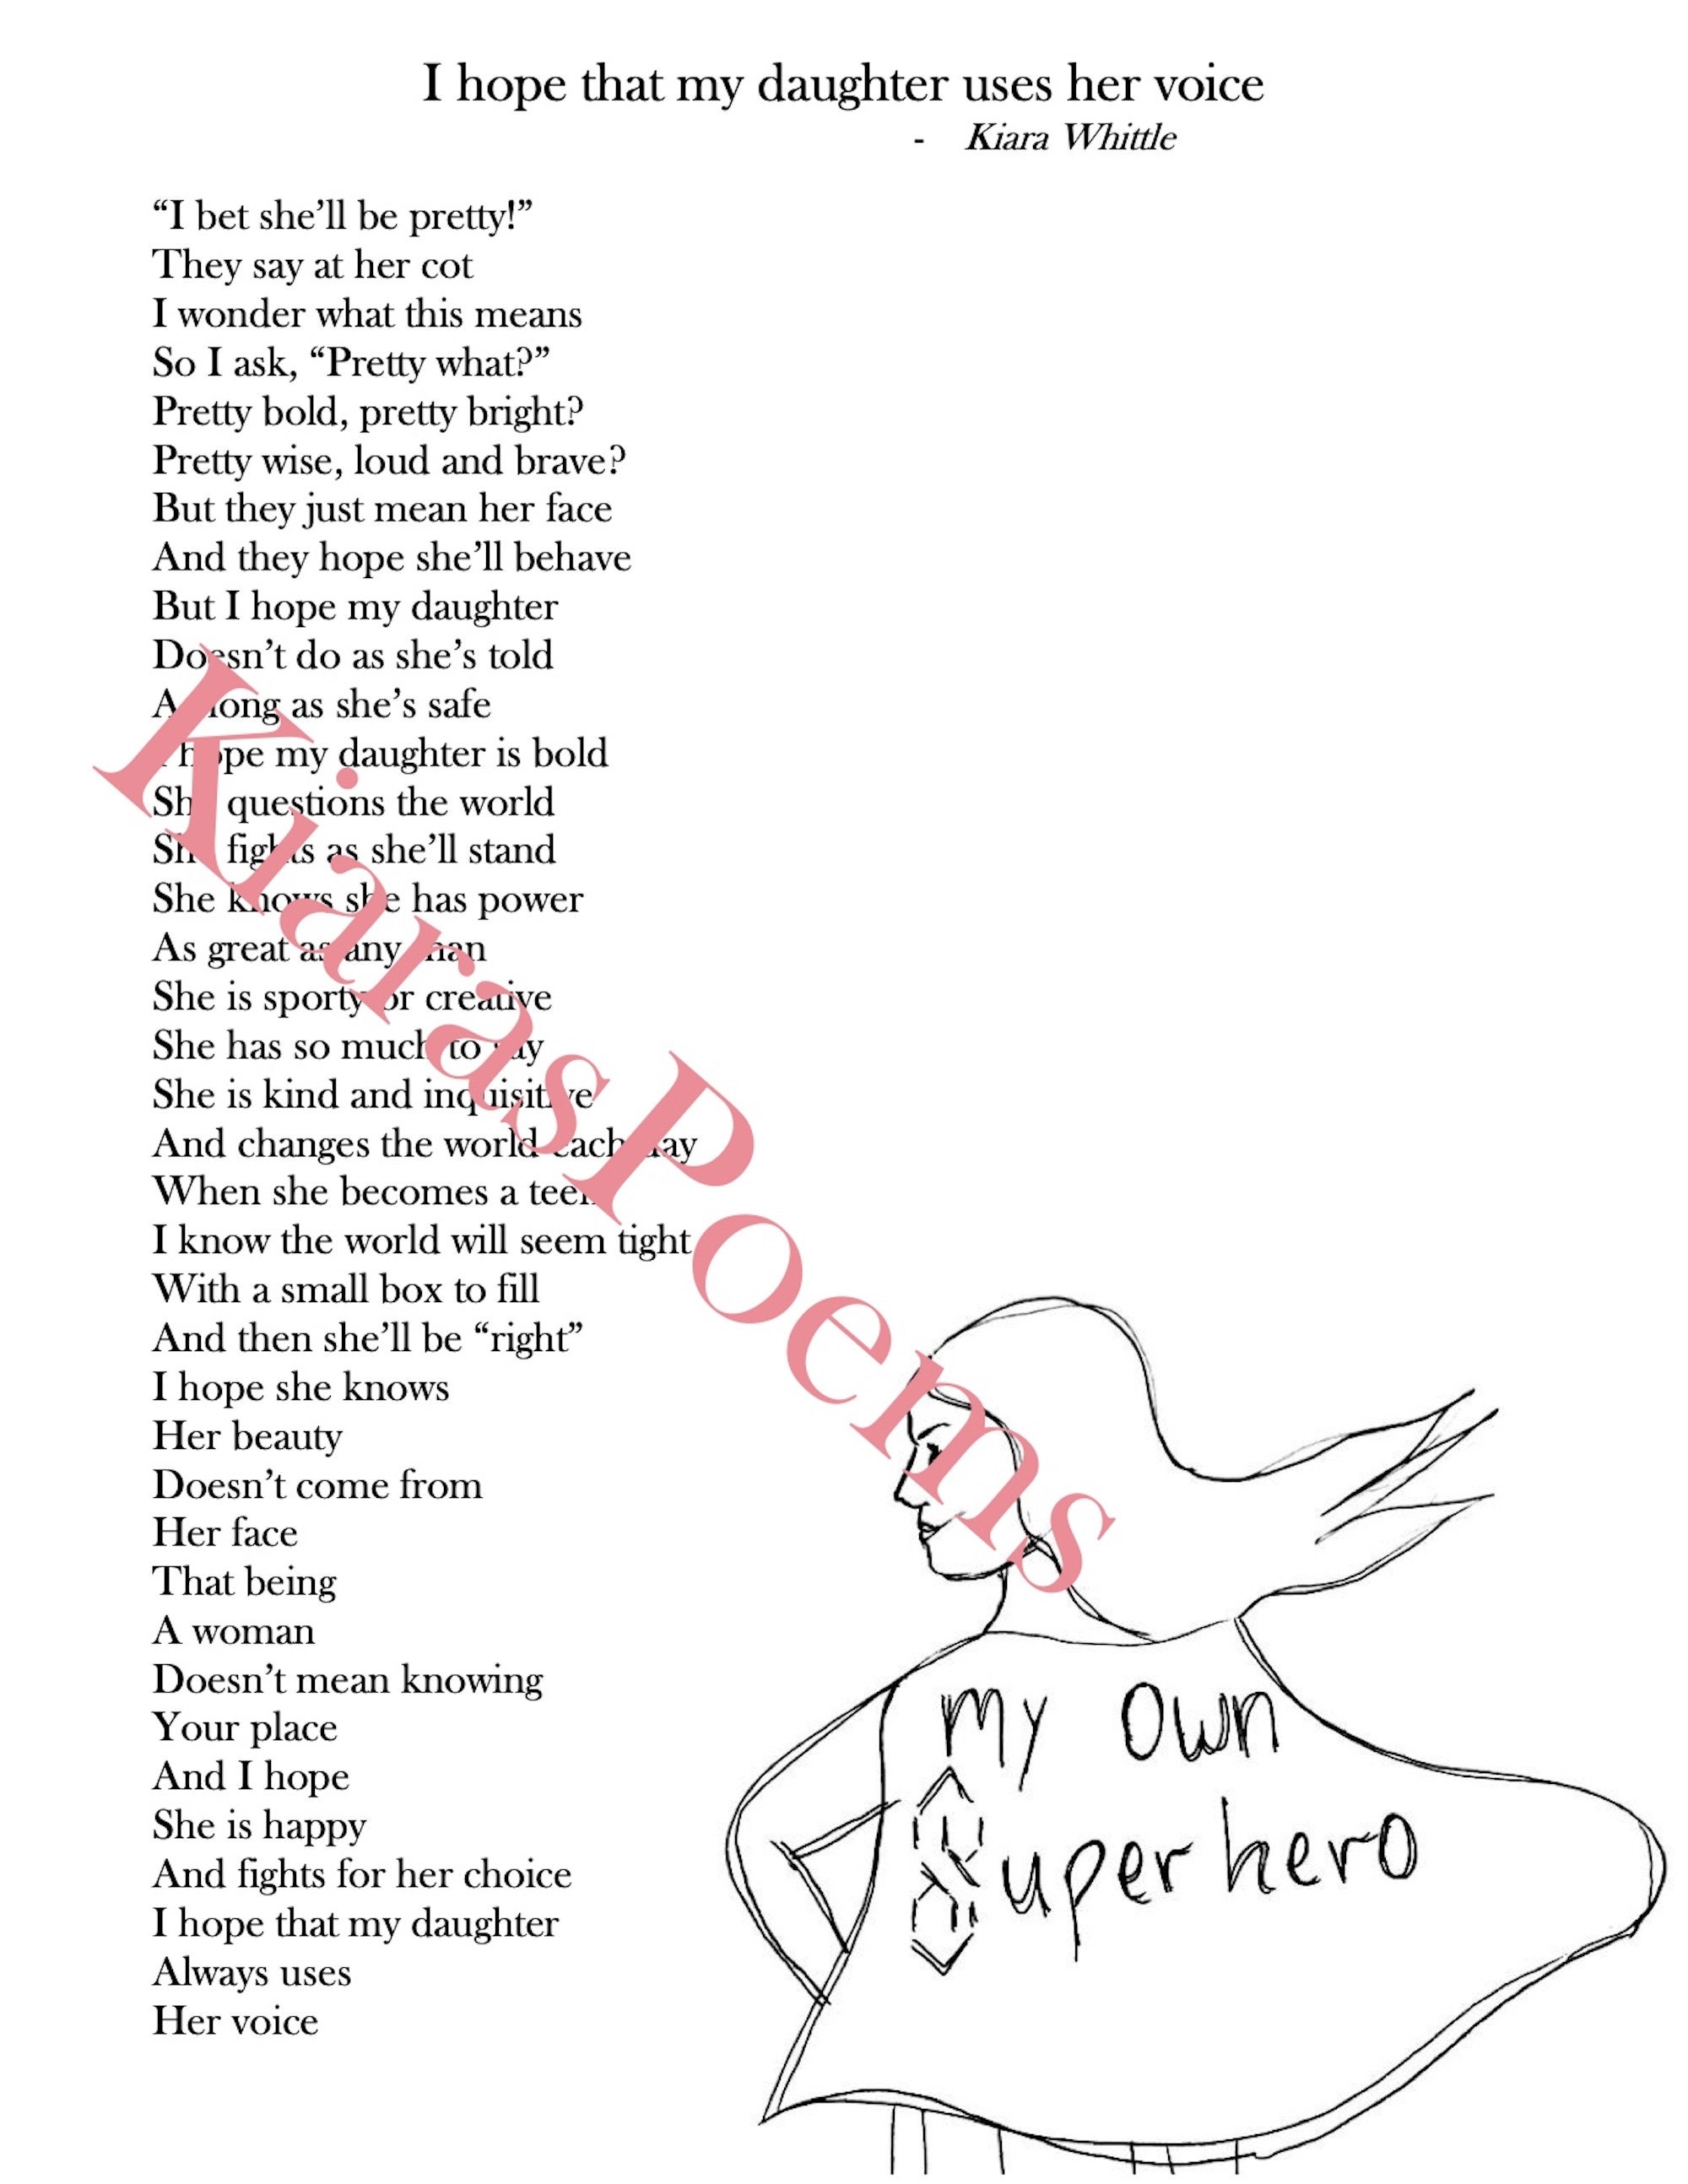 the superhero lyrics｜TikTok Search